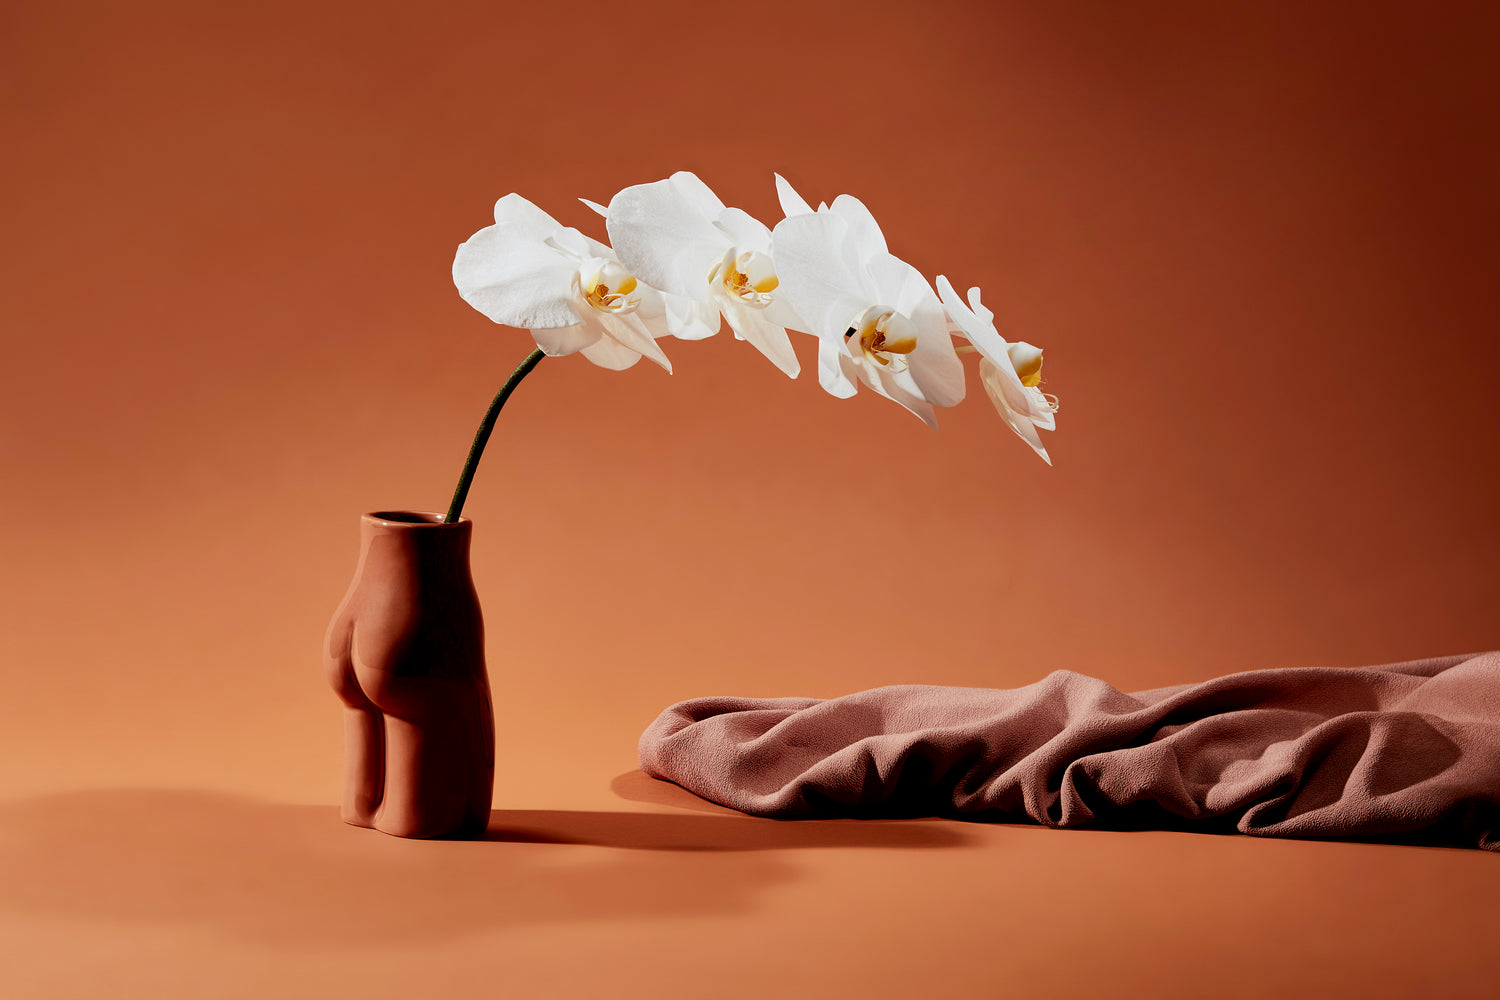 female form ceramic vase